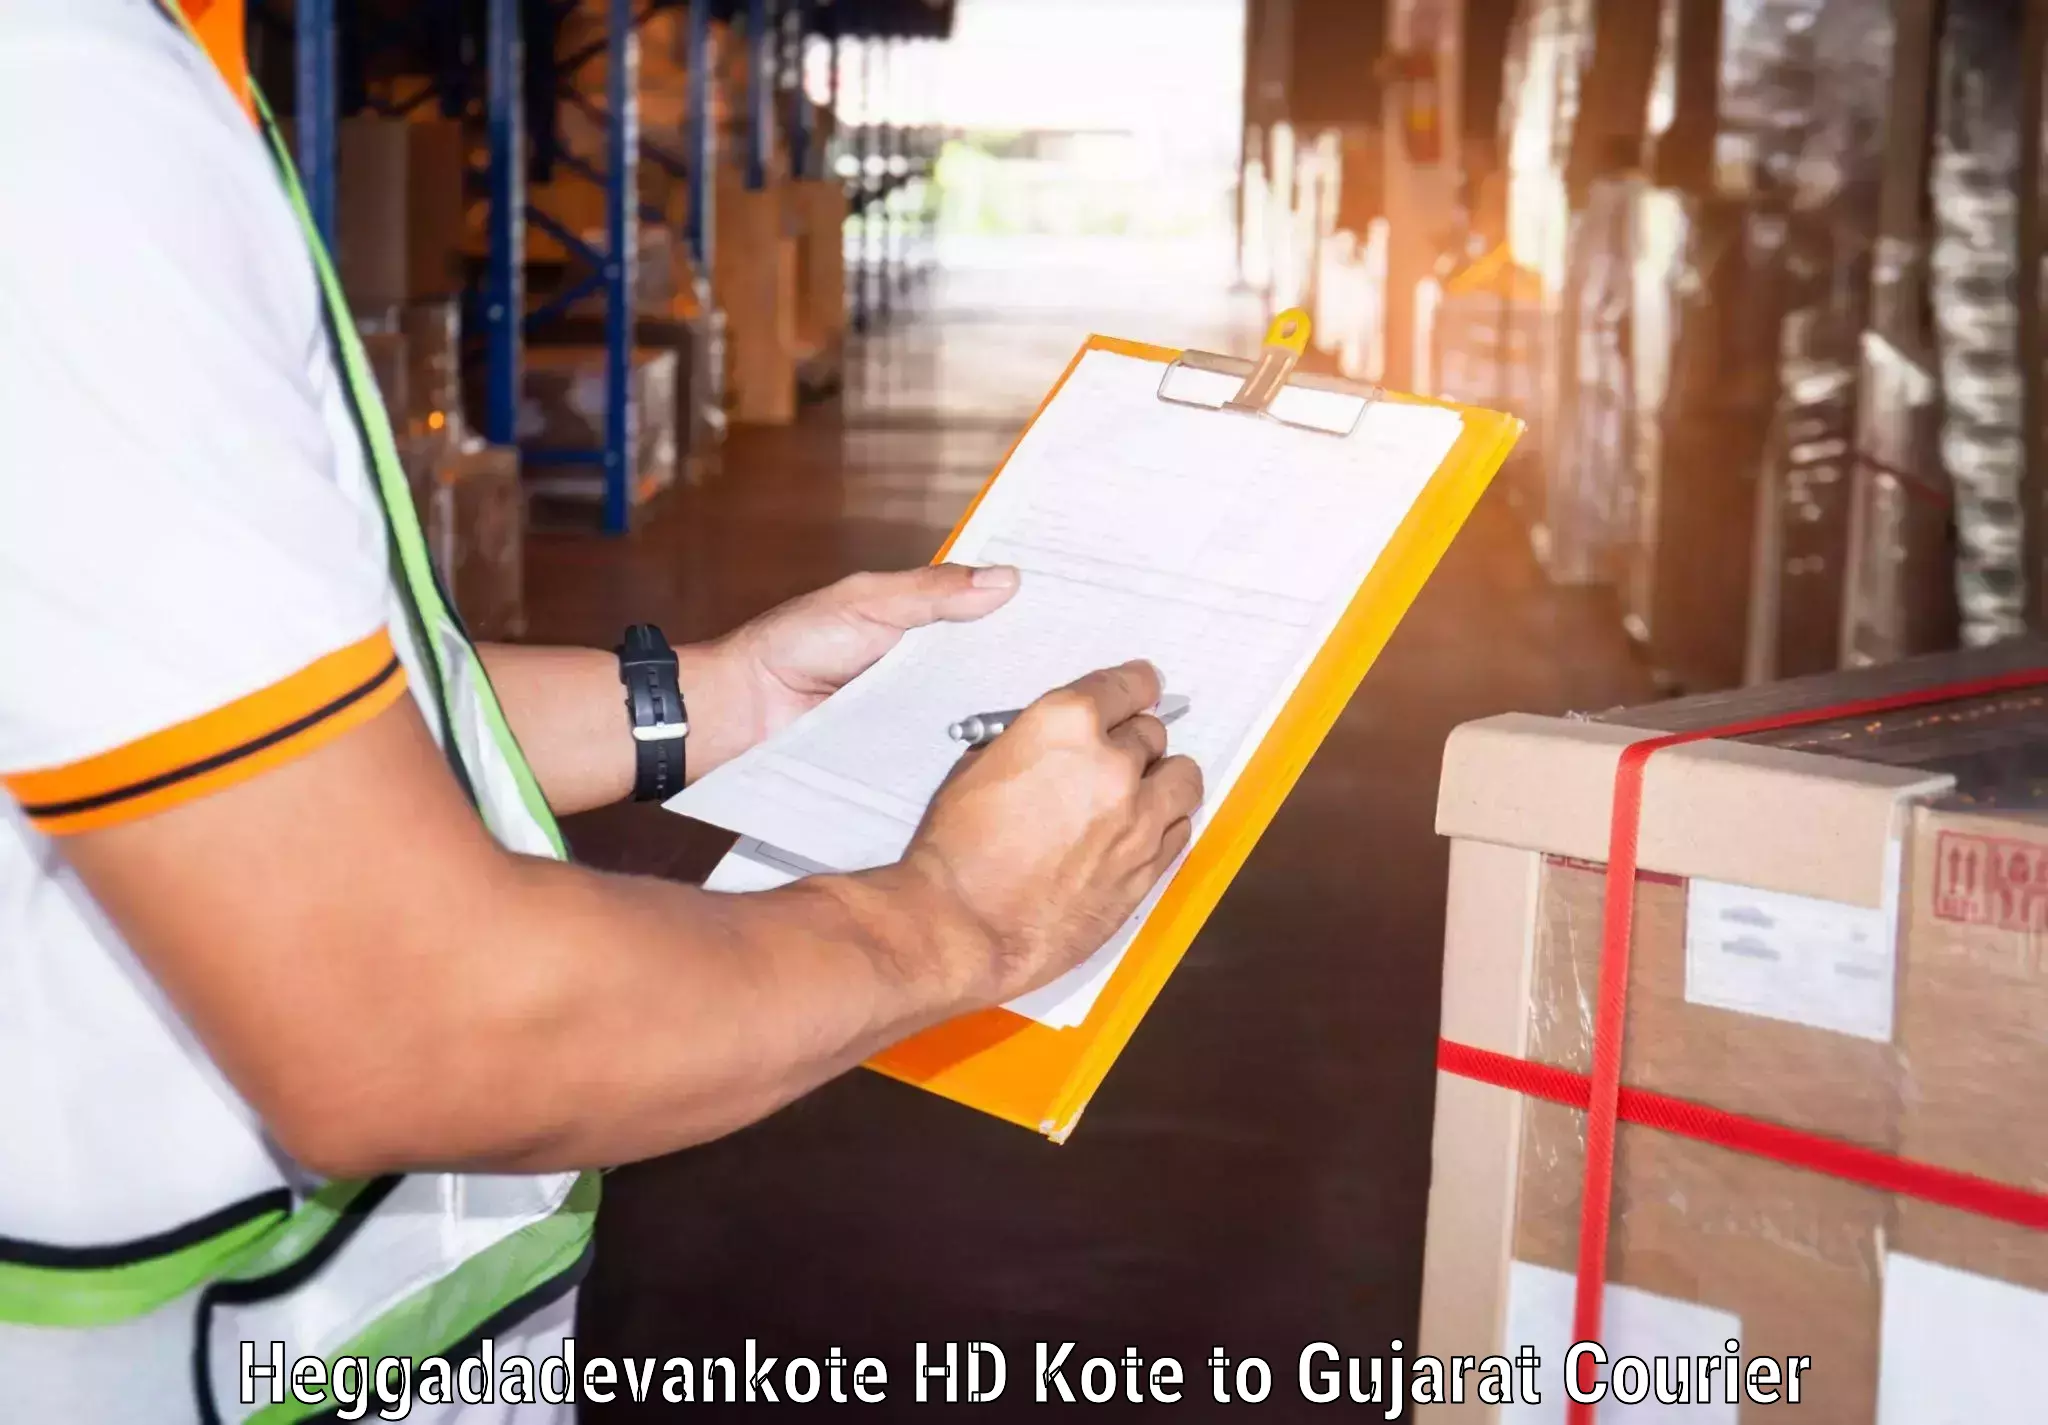 User-friendly delivery service Heggadadevankote HD Kote to Revdibazar